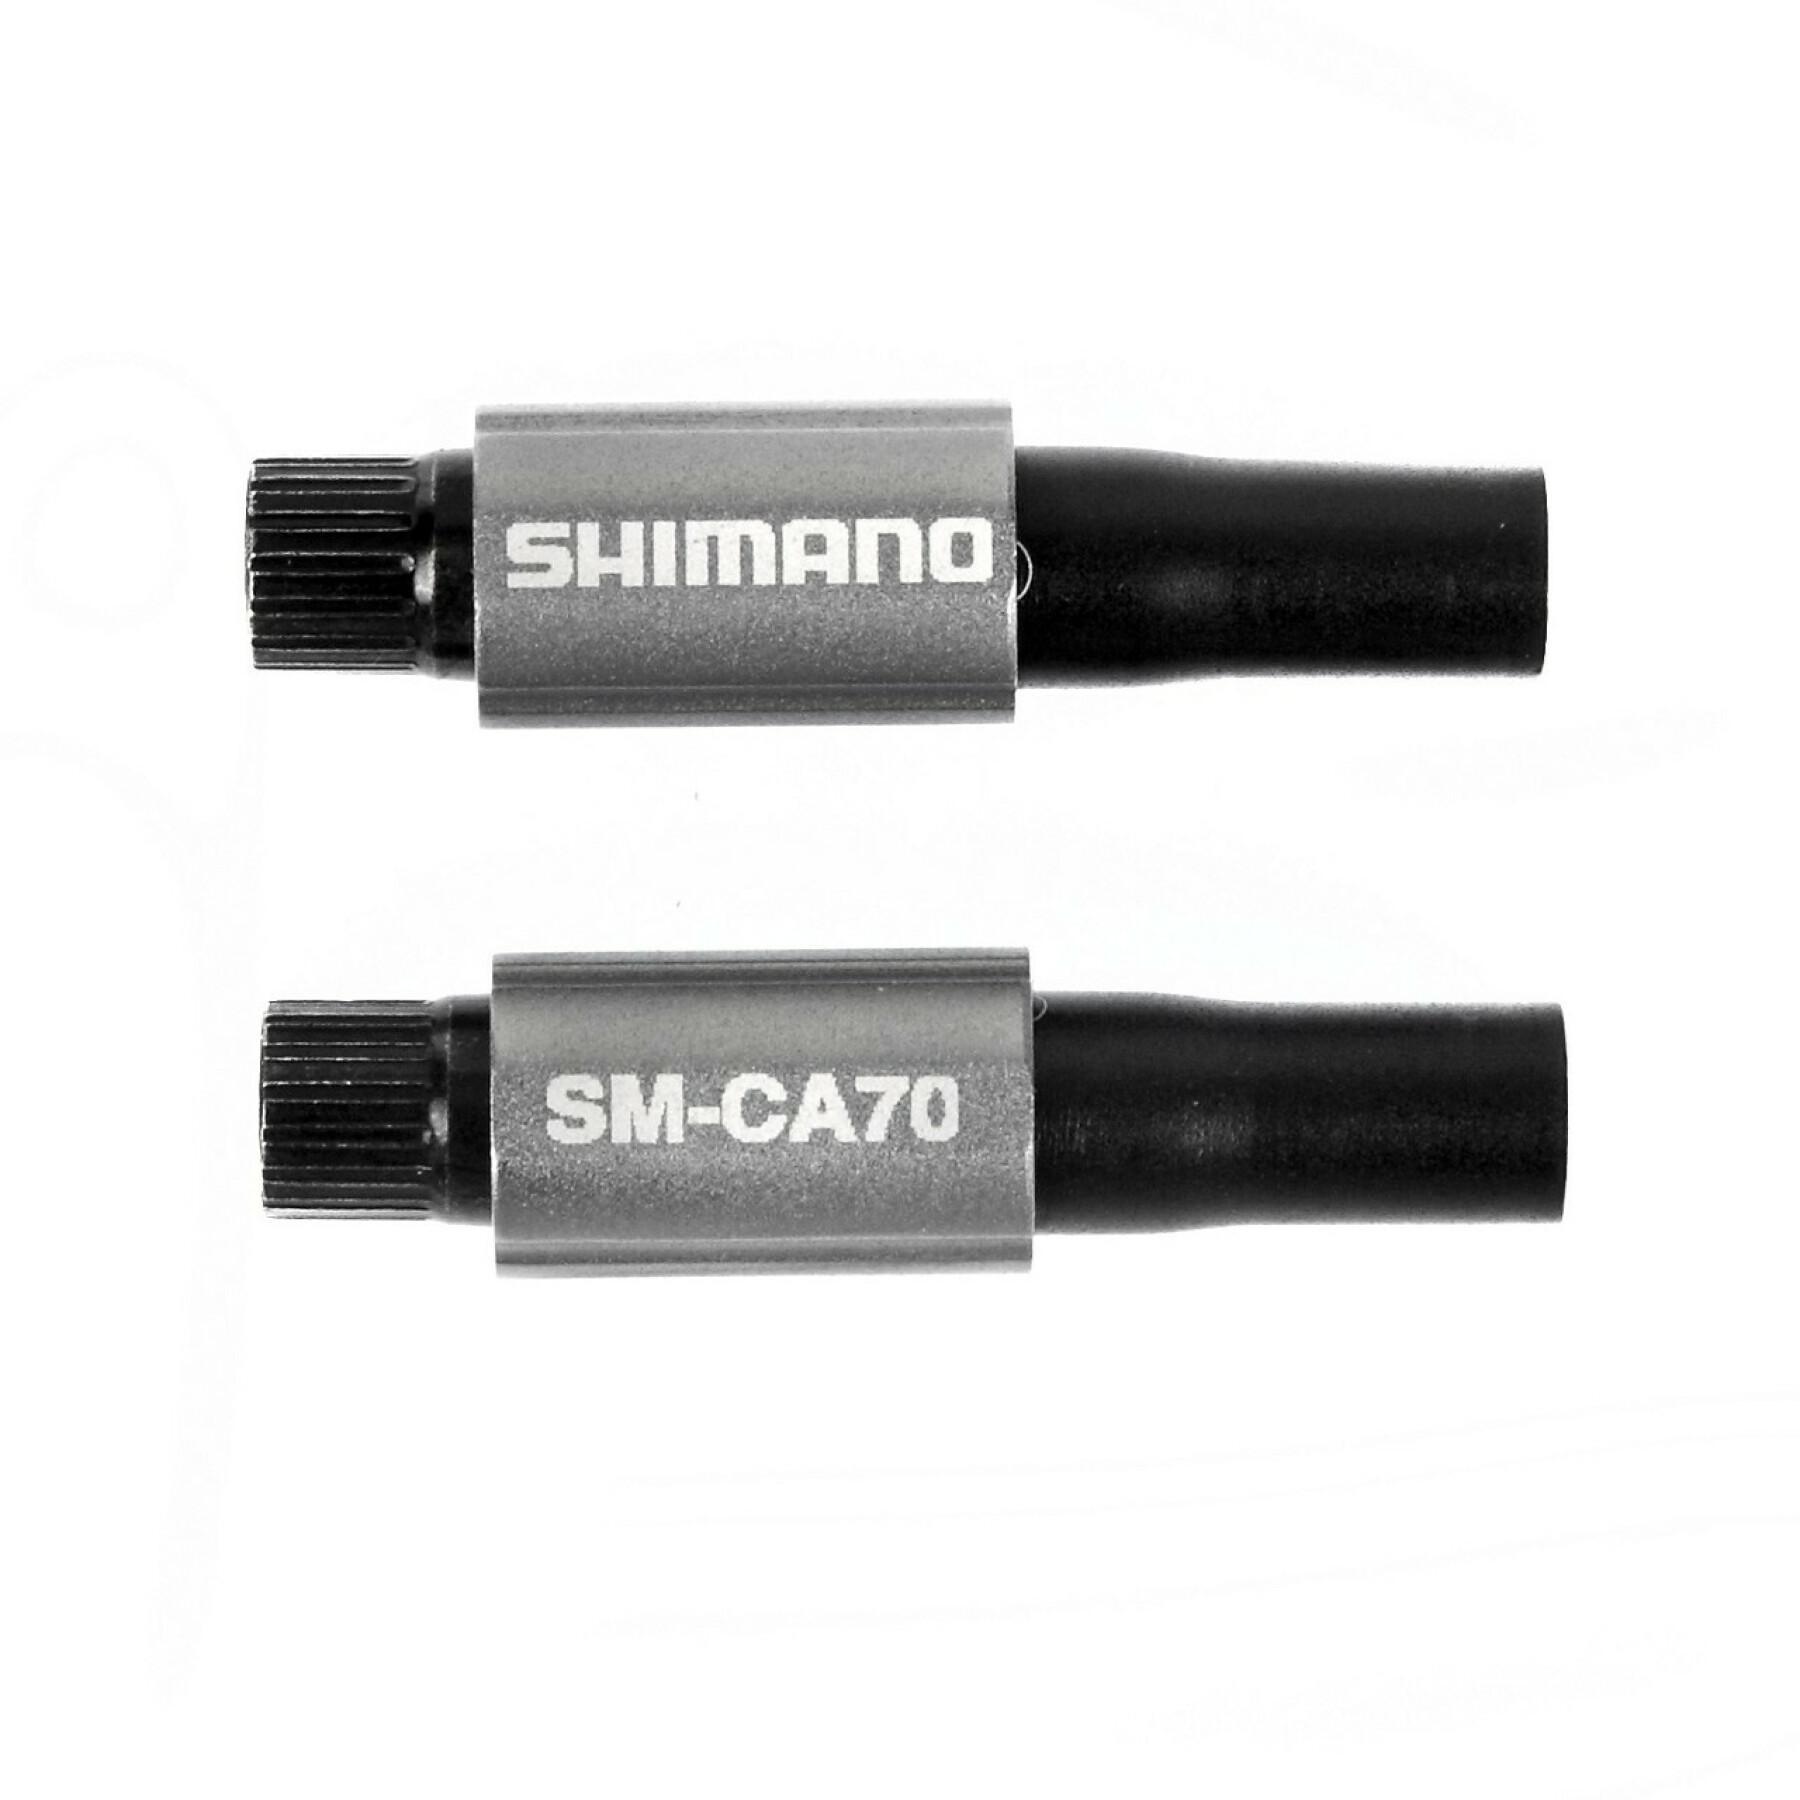 Einstellen des Kabels Shimano SM-CA70